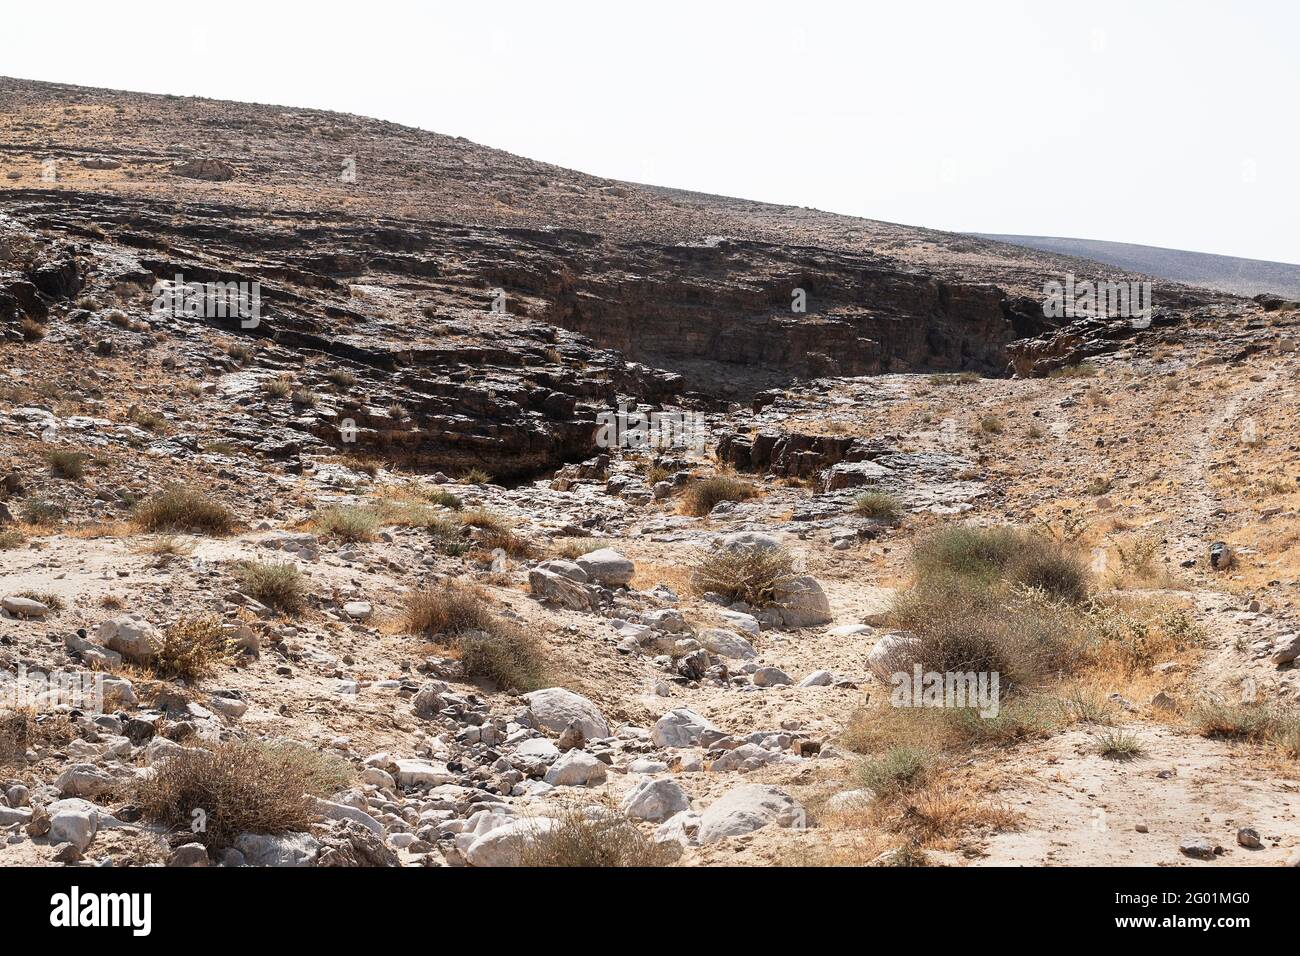 Typische Negev-Wüstenlandschaft südöstlich von Arad in Israel zeigt Eine Schlucht, die aus Furnischichten mit Brocken gebildet wird Kreide im Vordergrund Stockfoto